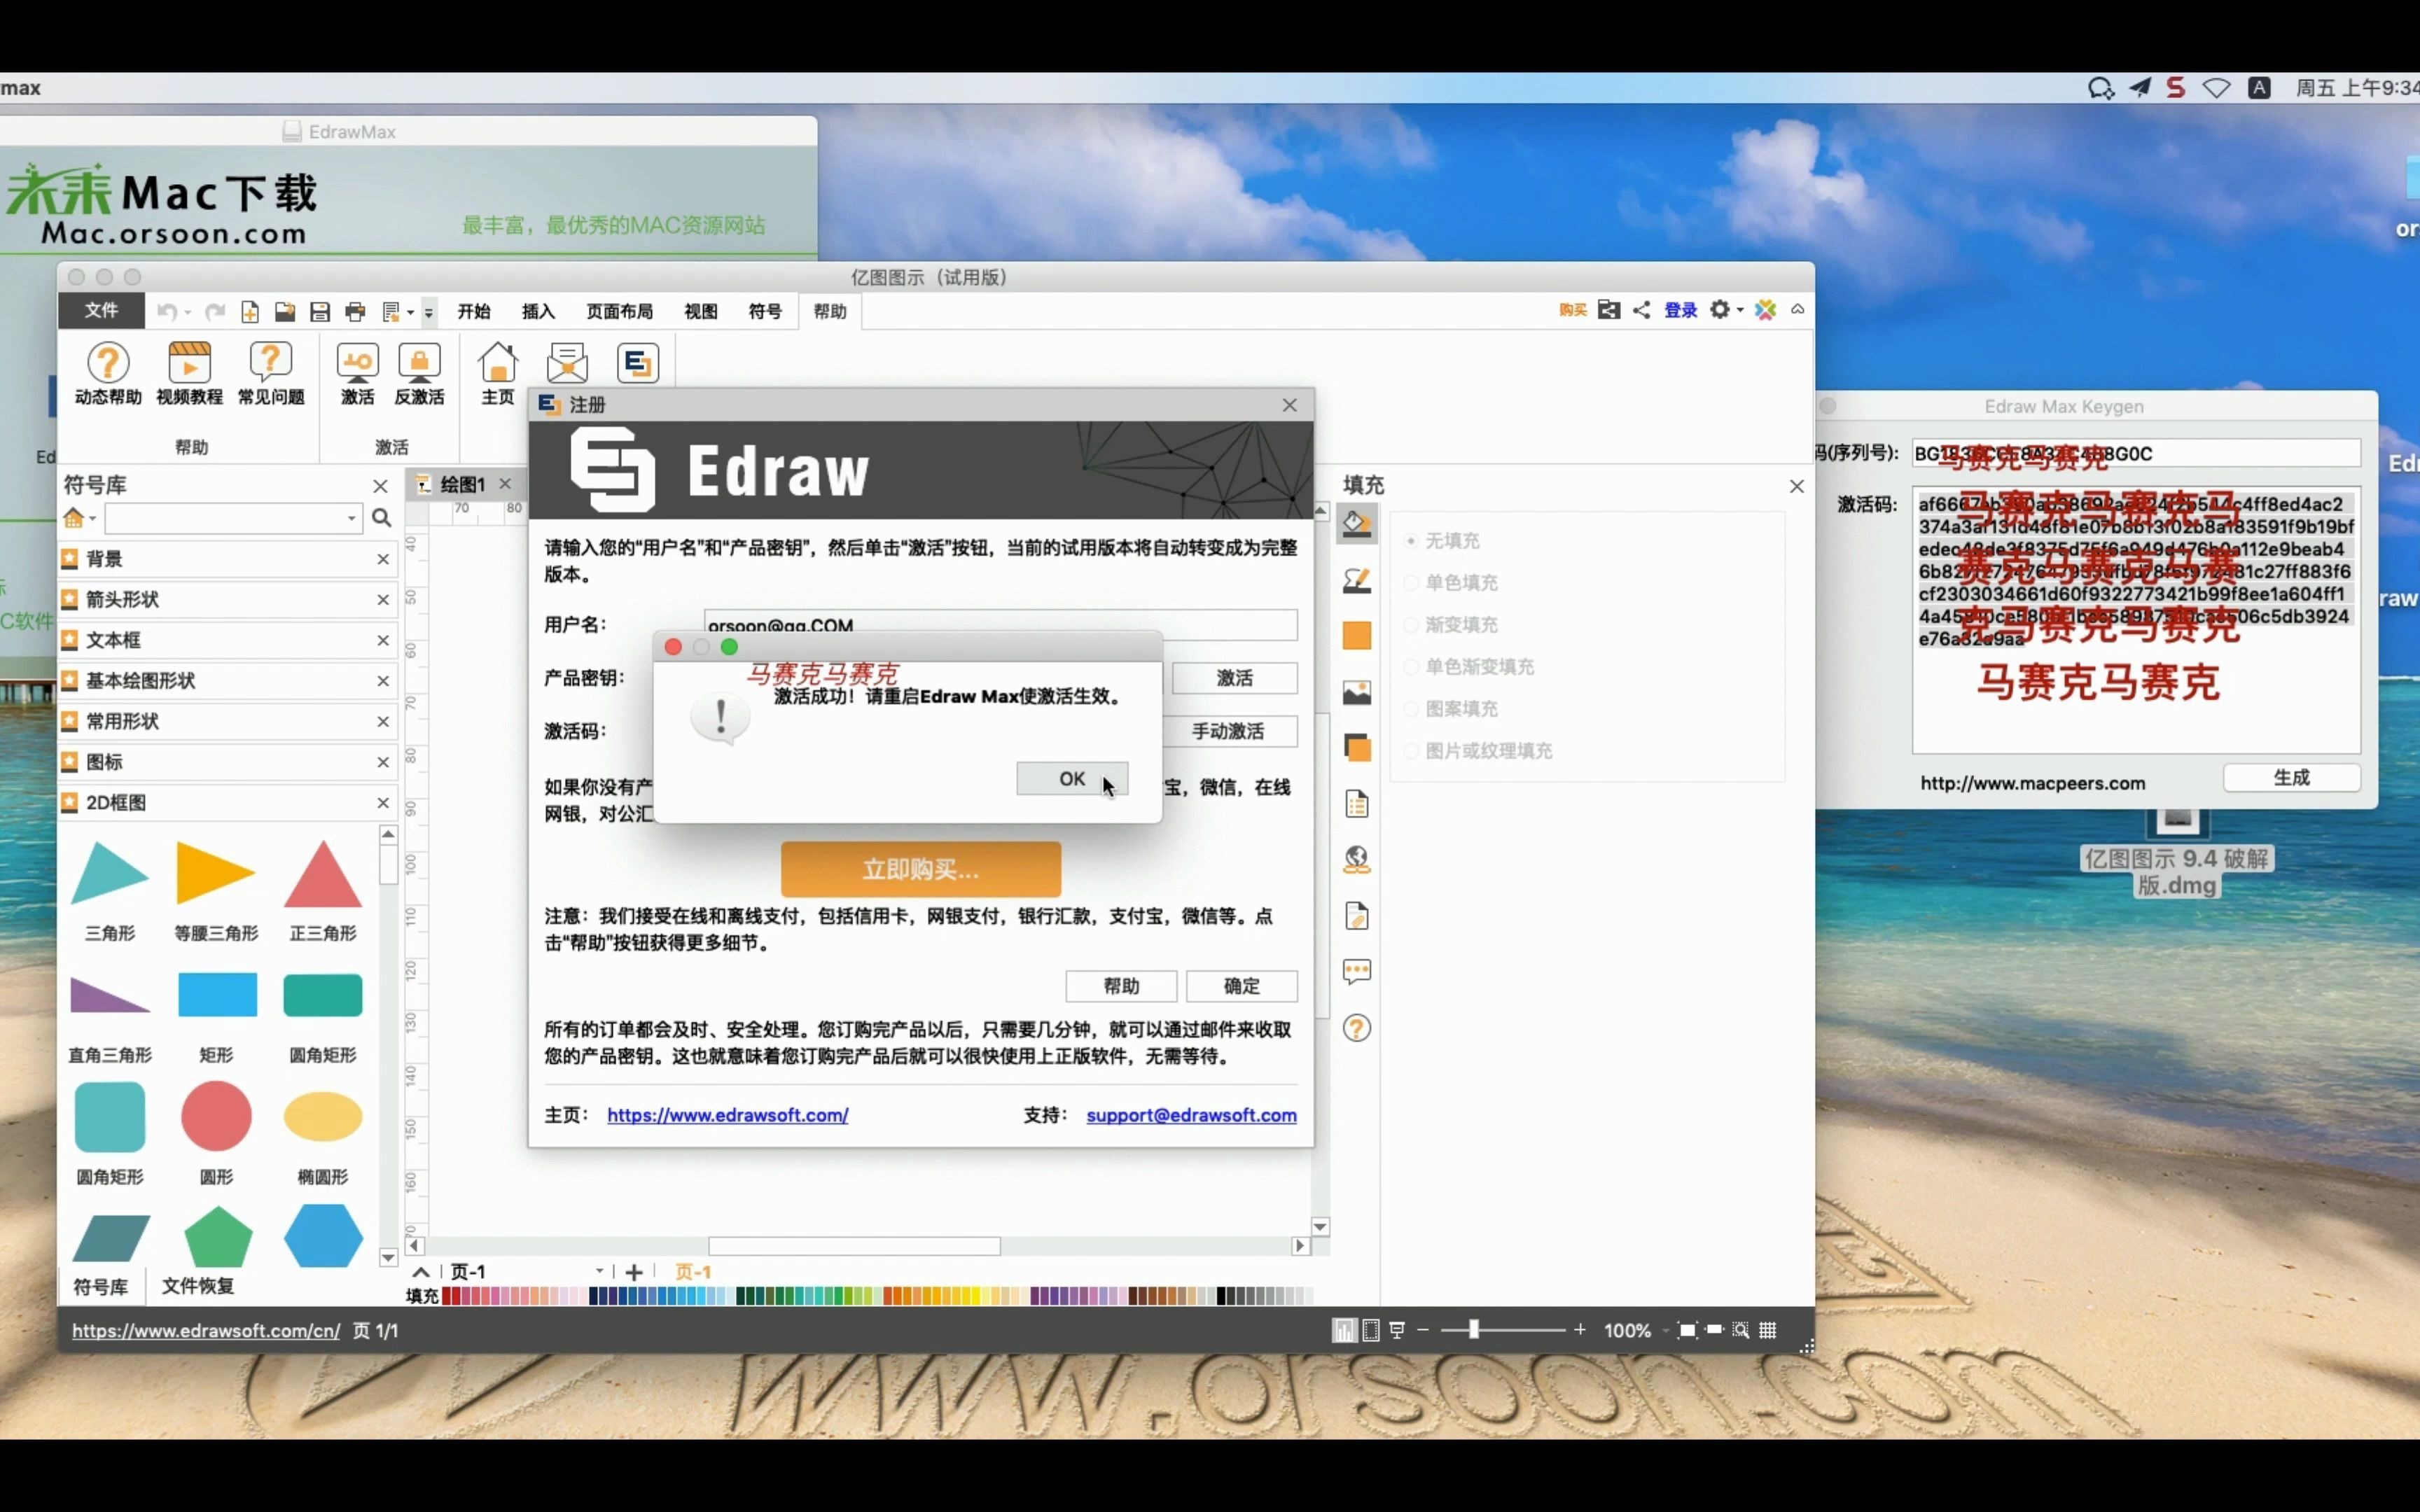 wondershare edrawmax for mac